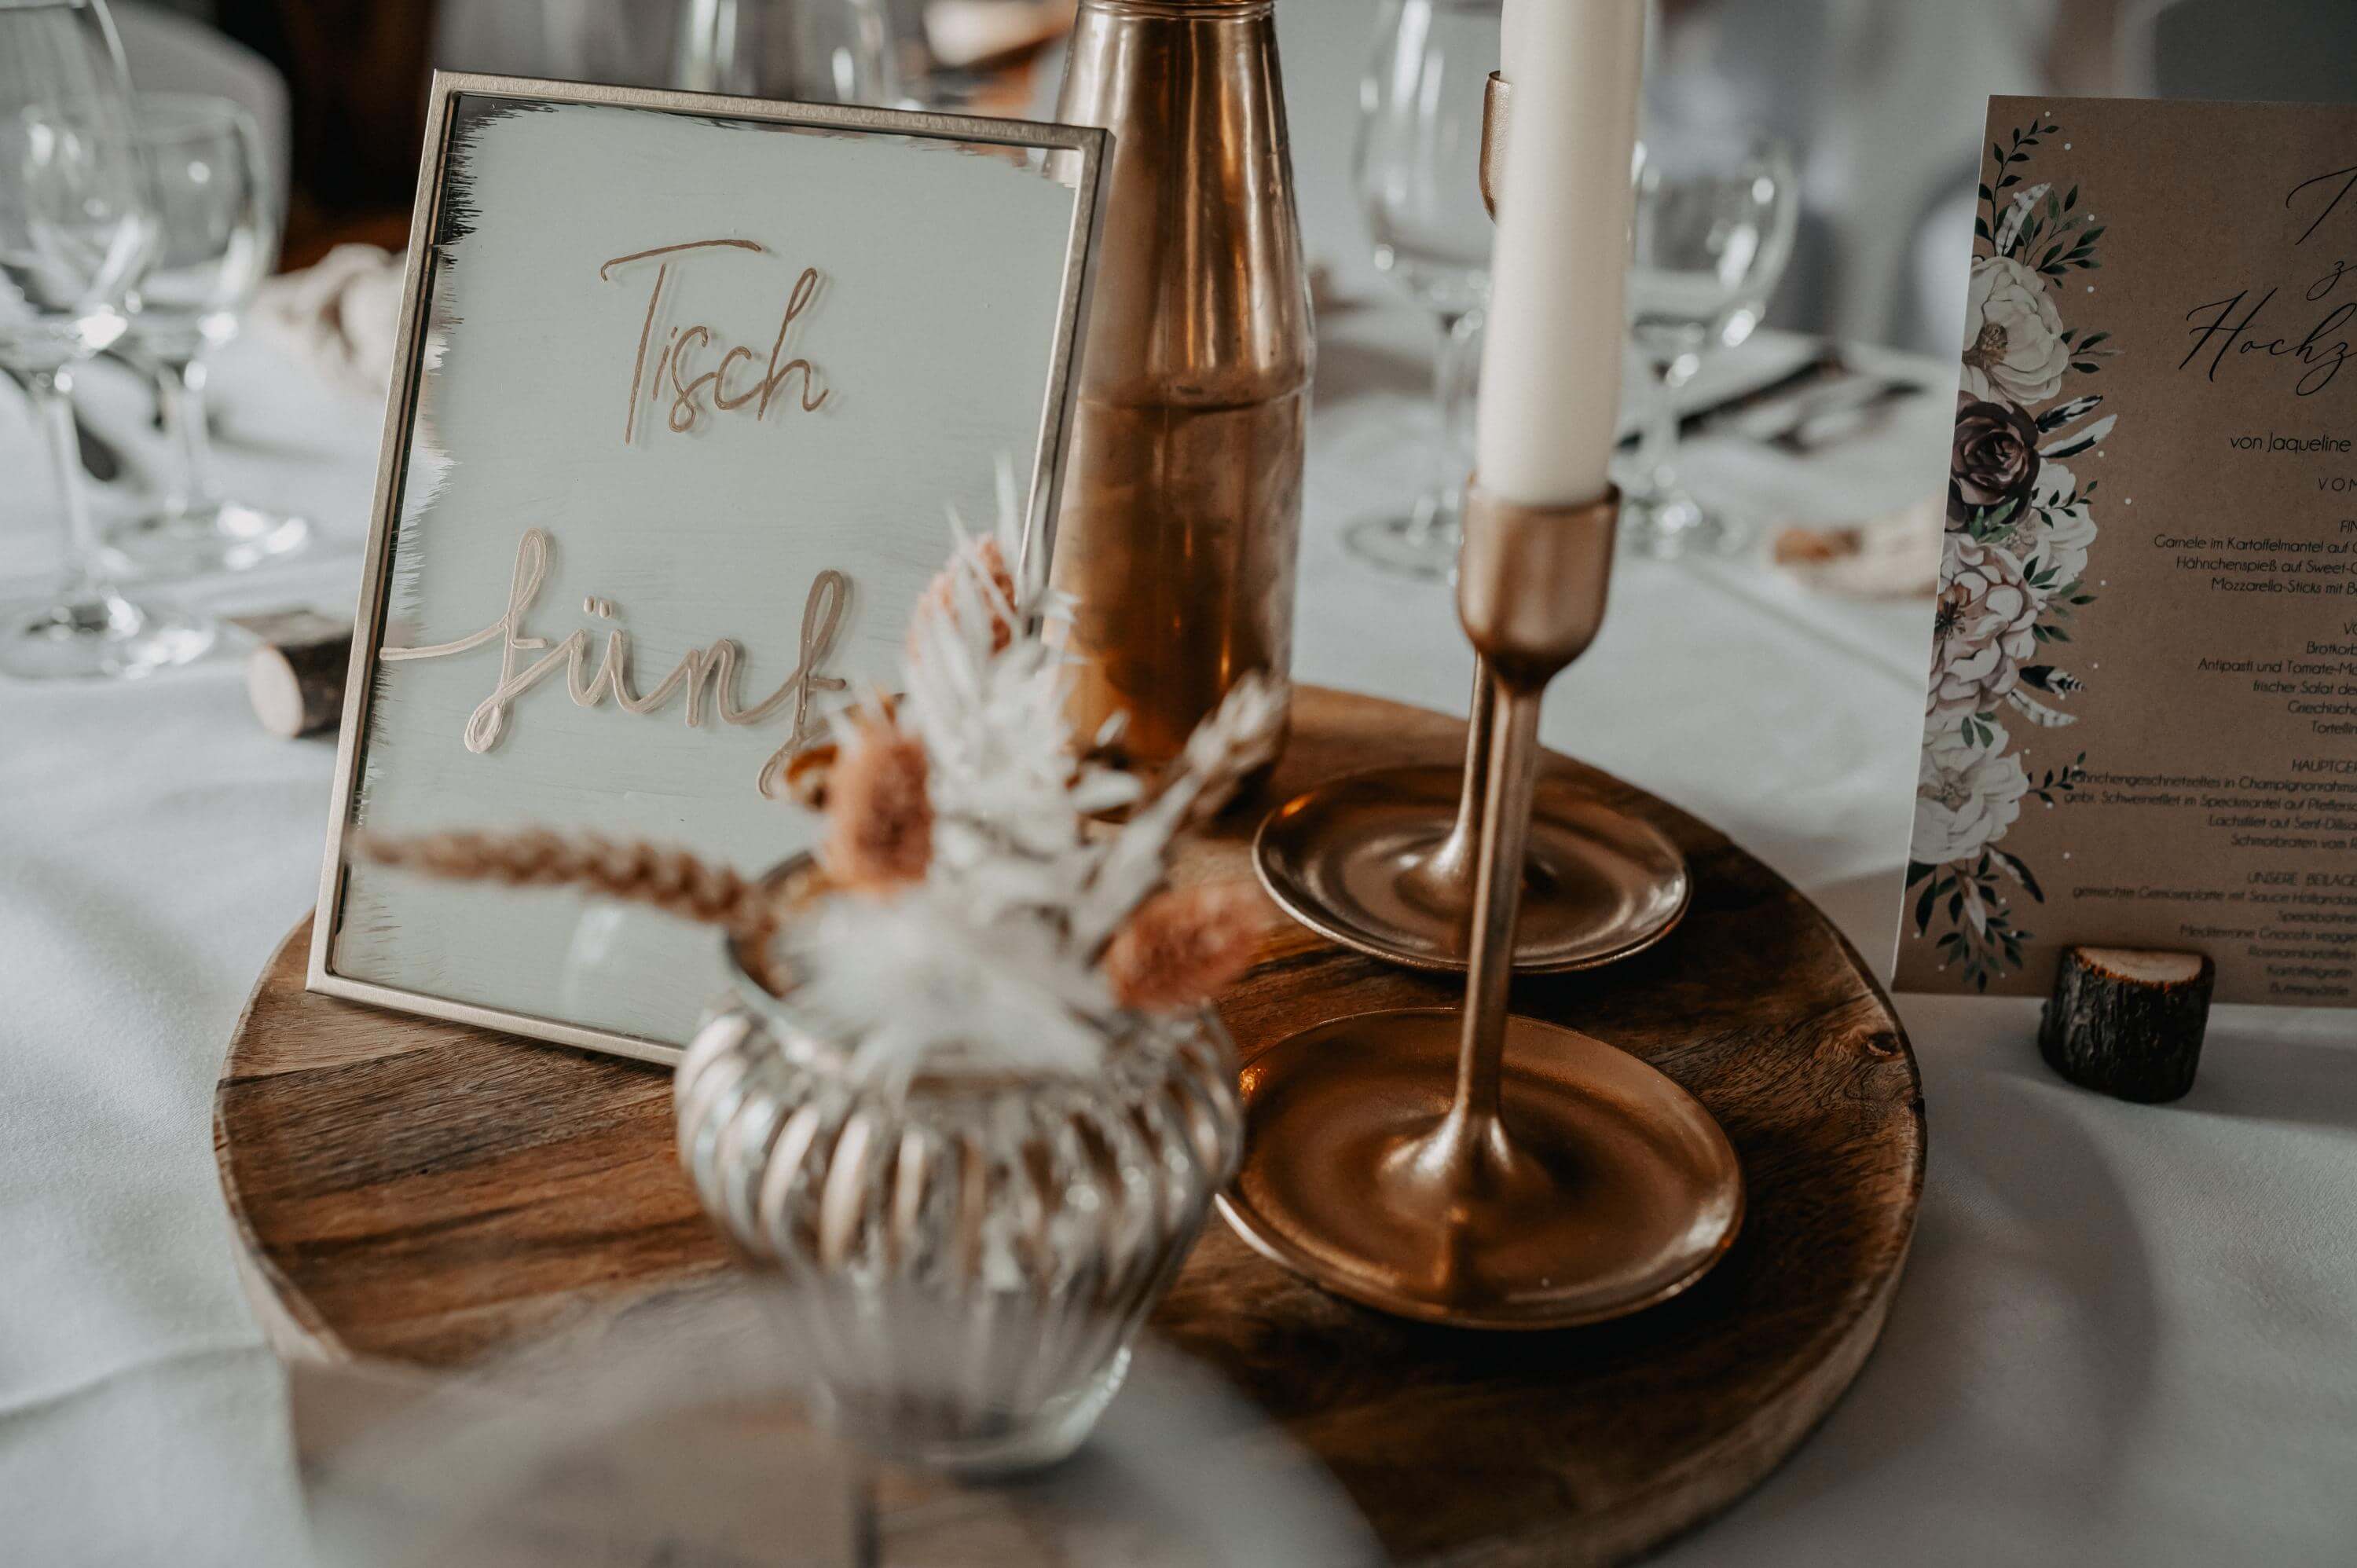 Die kupfer- und weißfarbene Tischdekoration mit Tischnummer im Vintage Stil wirkt edel und modern mit den eisernen Kerzenständern und Trockenblumen auf einem Holzteller kombiniert.